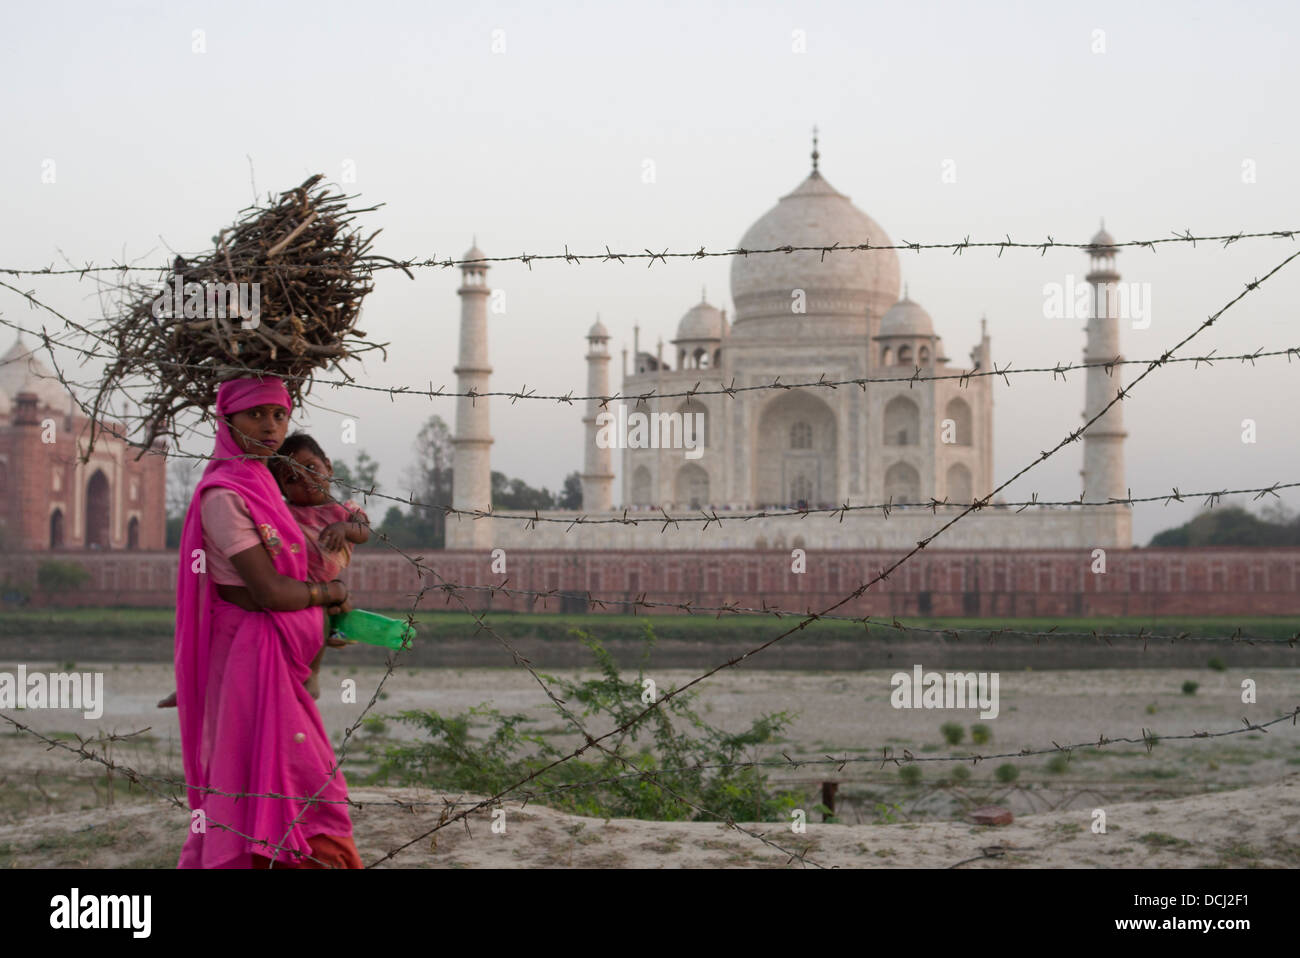 Frau und Kind Stacheldraht Draht- und Taj Mahal weißen Marmor-Mausoleum - Agra, Indien ein UNESCO-Weltkulturerbe Stockfoto